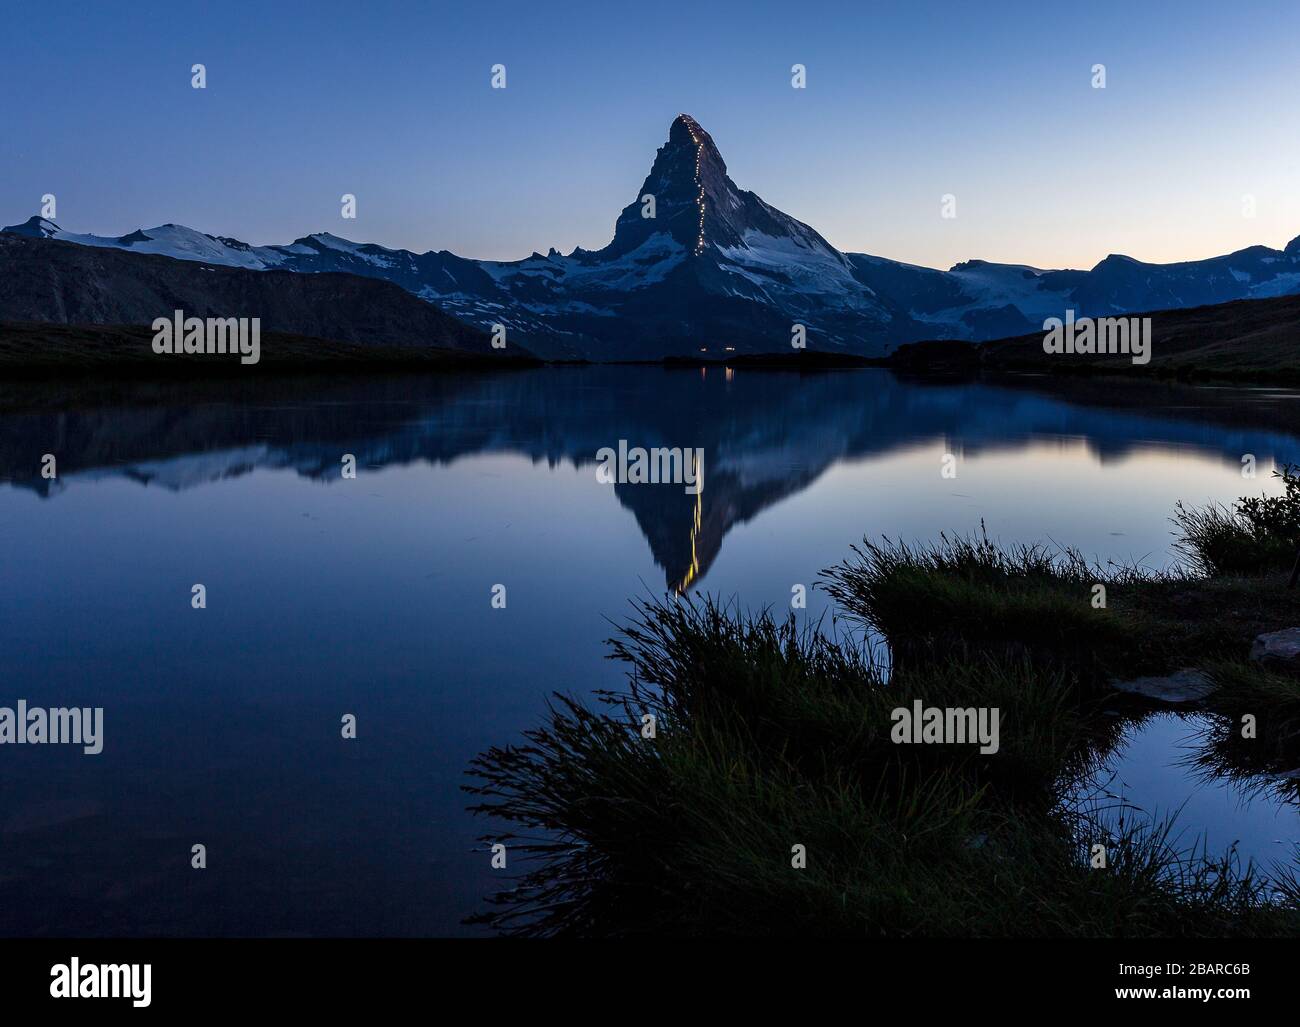 La célébration de 150 ans à partir de la première ascension de la montagne Matterhorn (Cervino). Réflexion sur le lac Stellisee à l'heure bleue. Alpes suisses. Europe. Banque D'Images